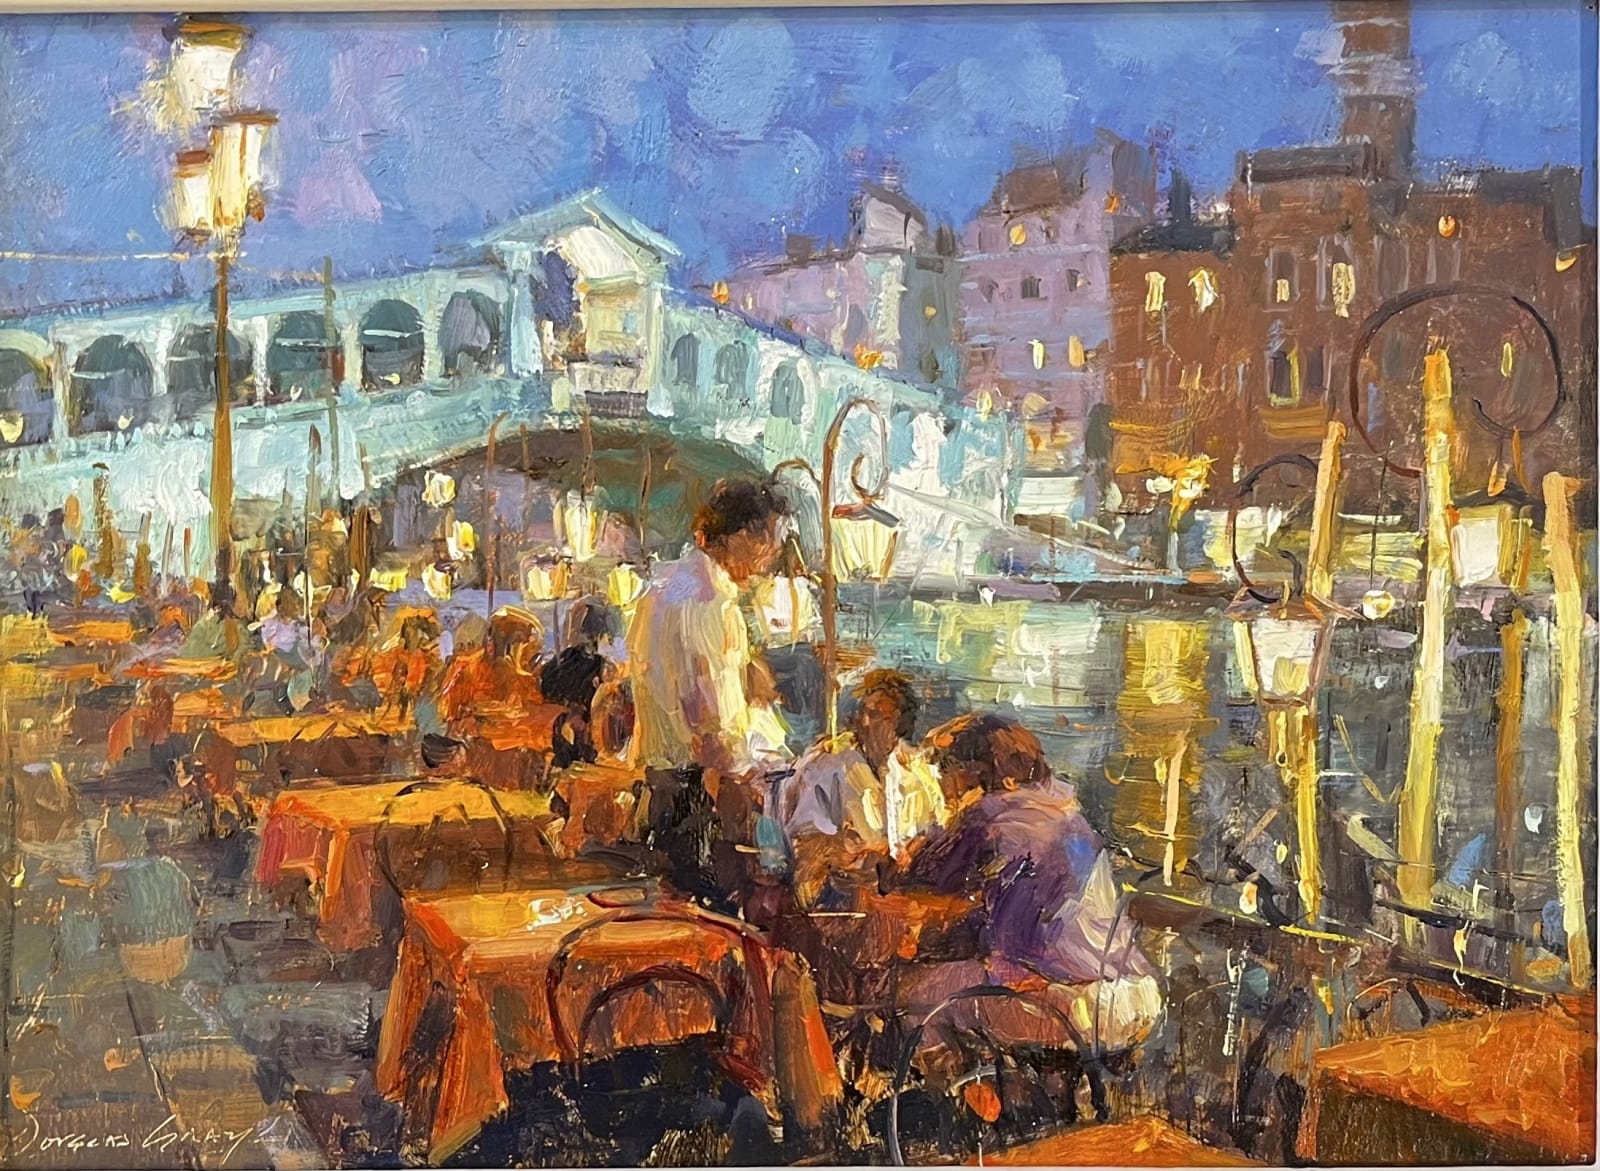 Douglas Gray, A Table at The Rialto, Venice